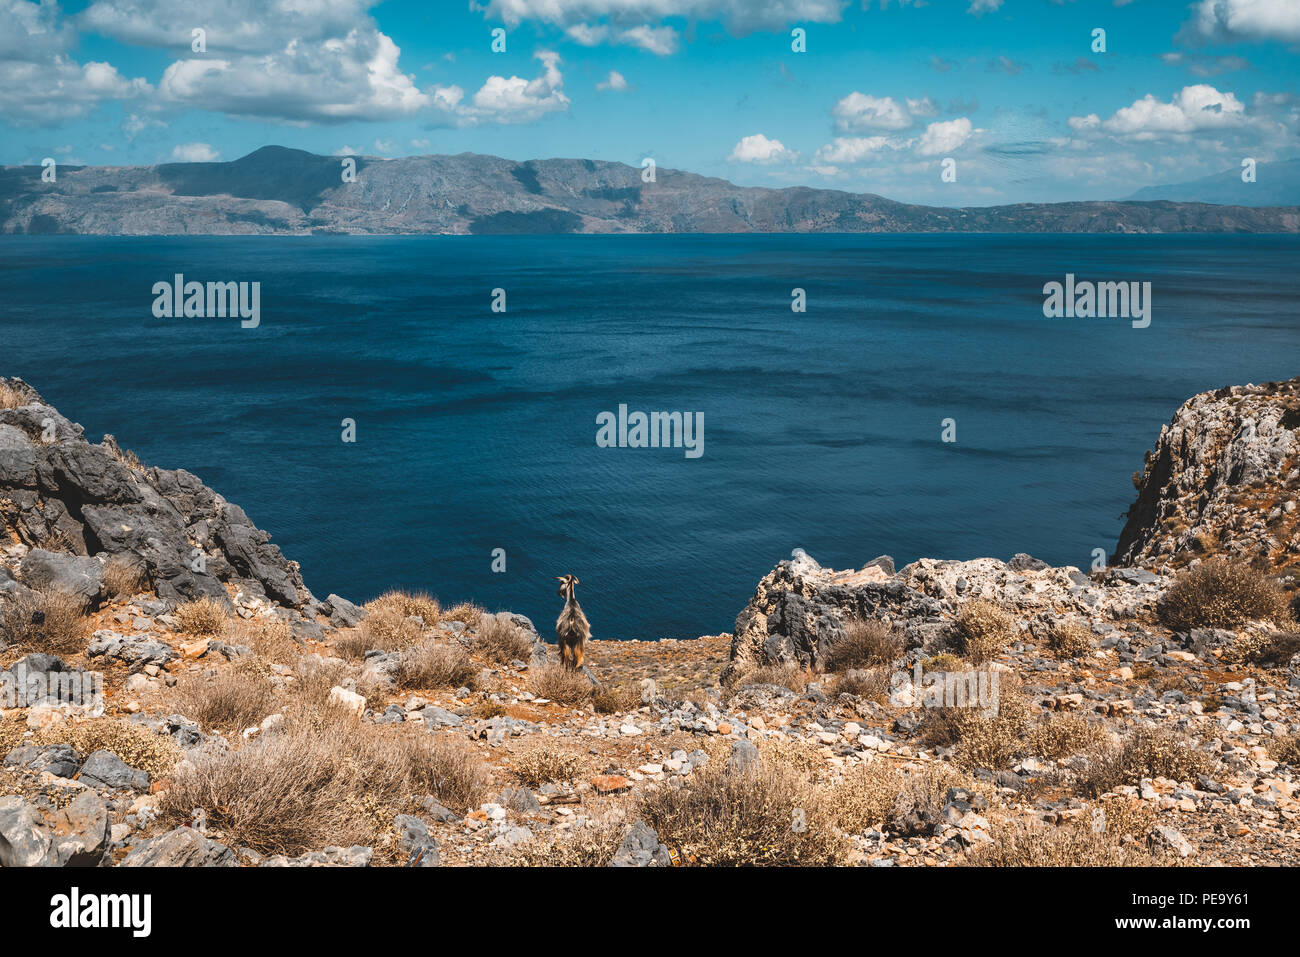 Neugierige Ziegen. Ziegen typisch für Mittelmeer Region mit Blick auf das Meer und die Insel im Hintergrund. Bild auf der griechischen Insel Kreta, bekannt für seine cl Stockfoto